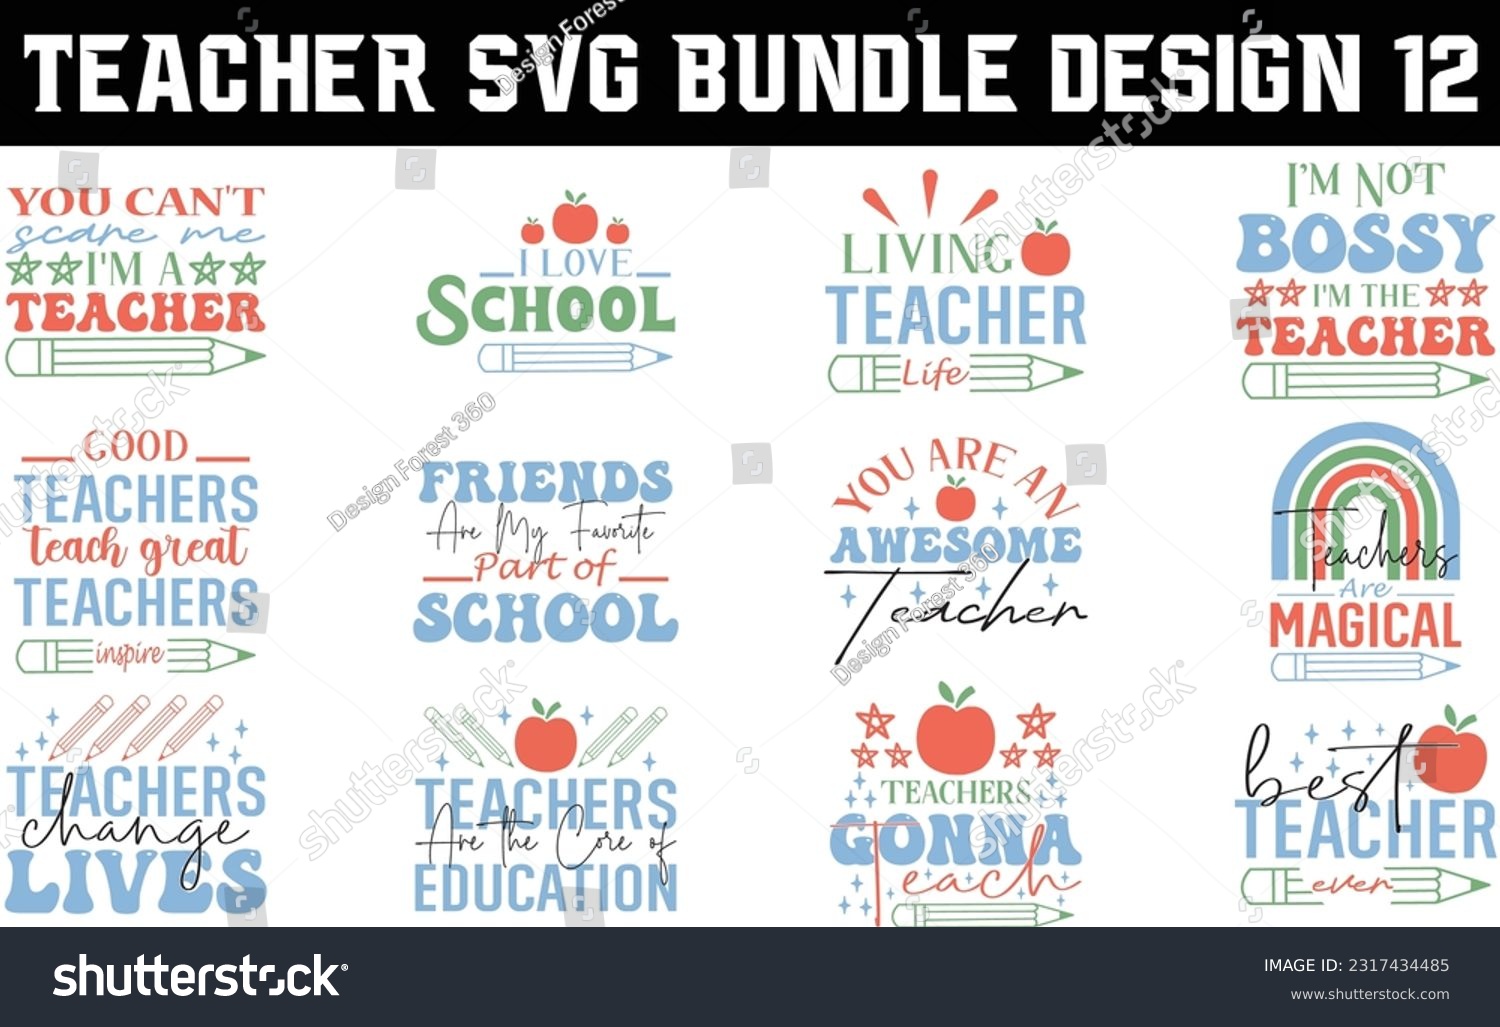 SVG of teacher svg design, teacher svg bundle svg